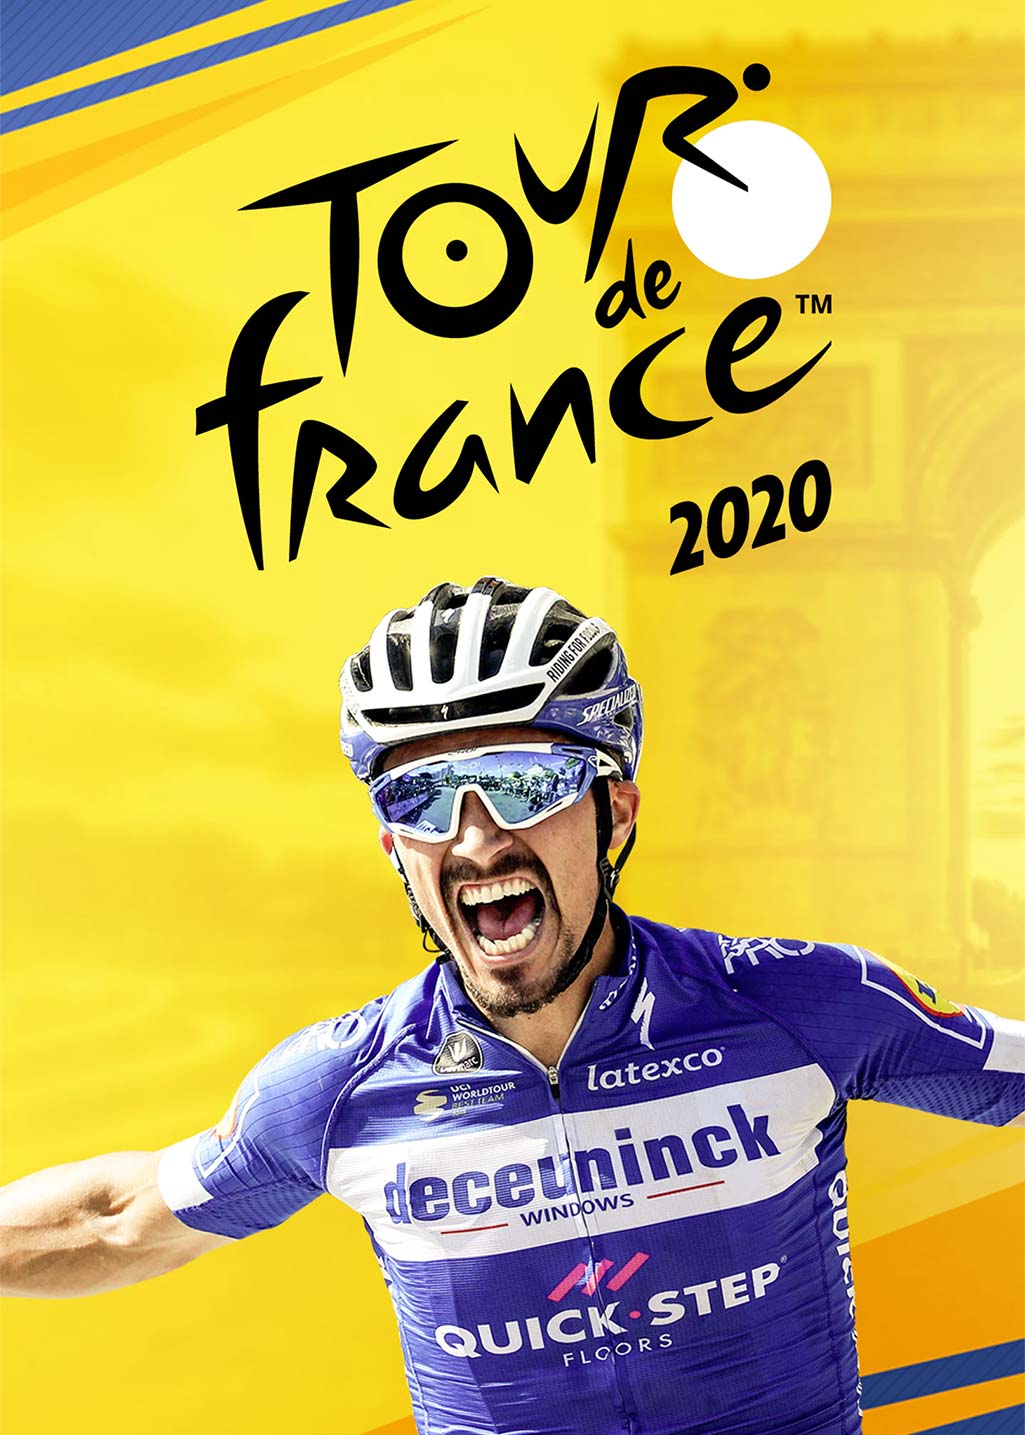 Tour de France 2020